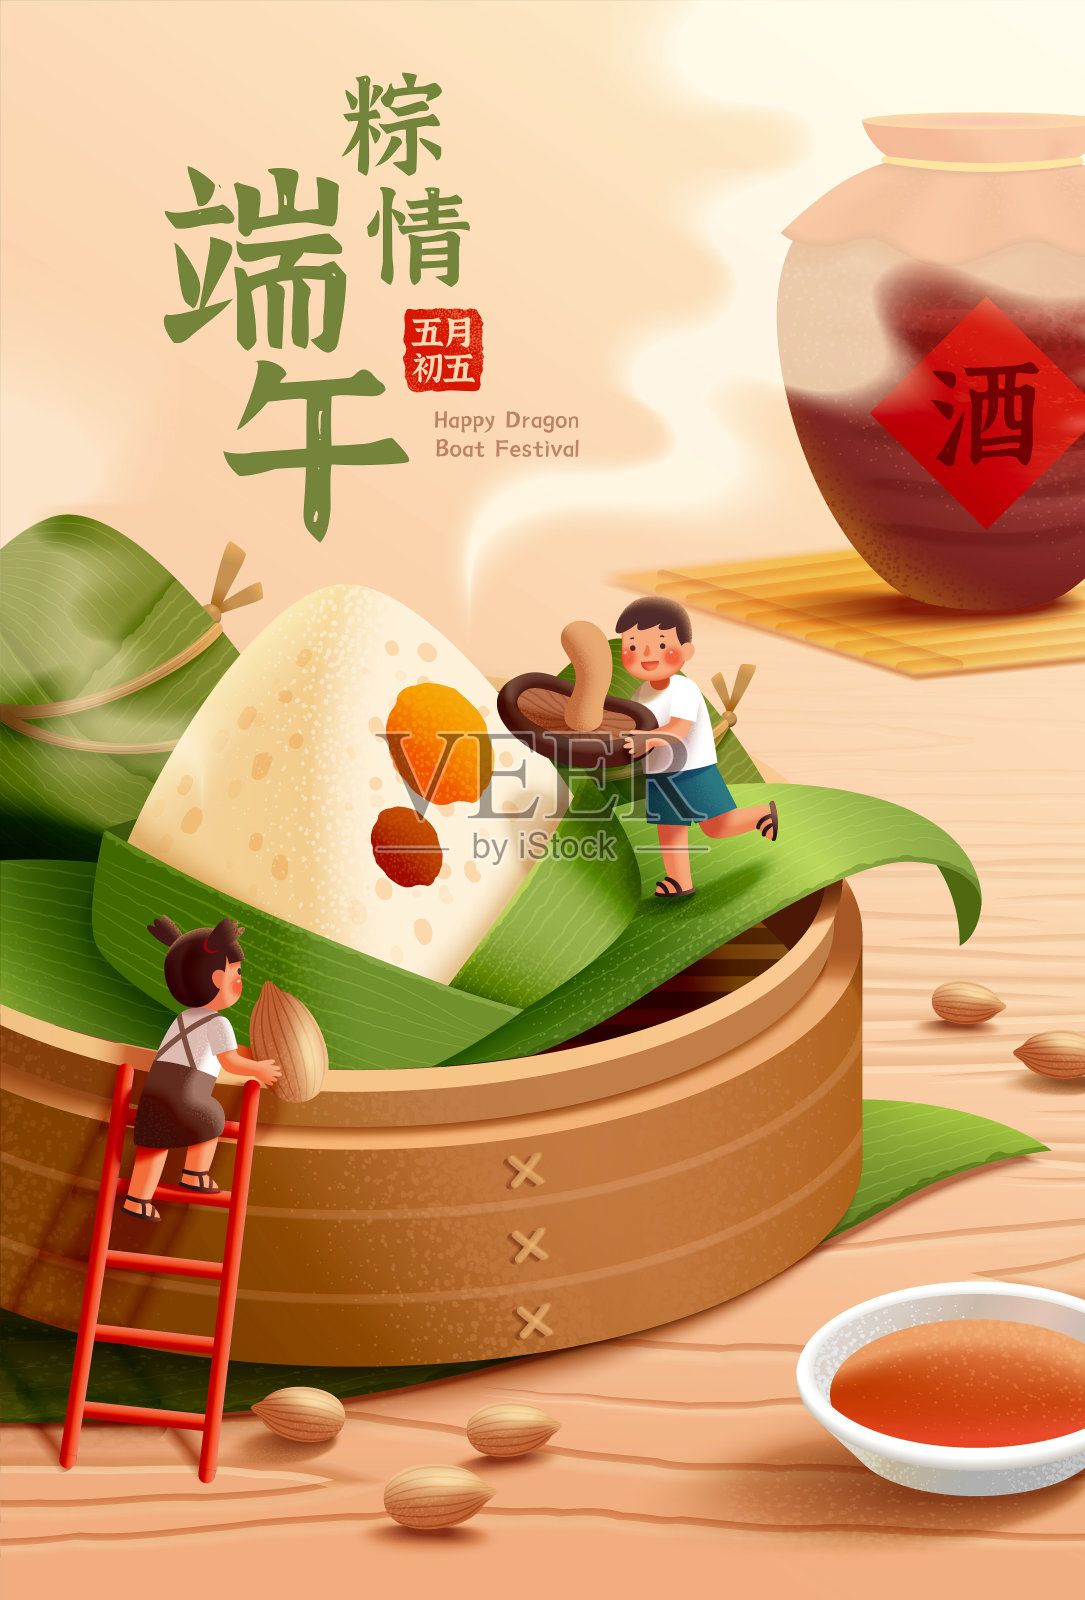 端午节吃粽子海报模板设计模板素材